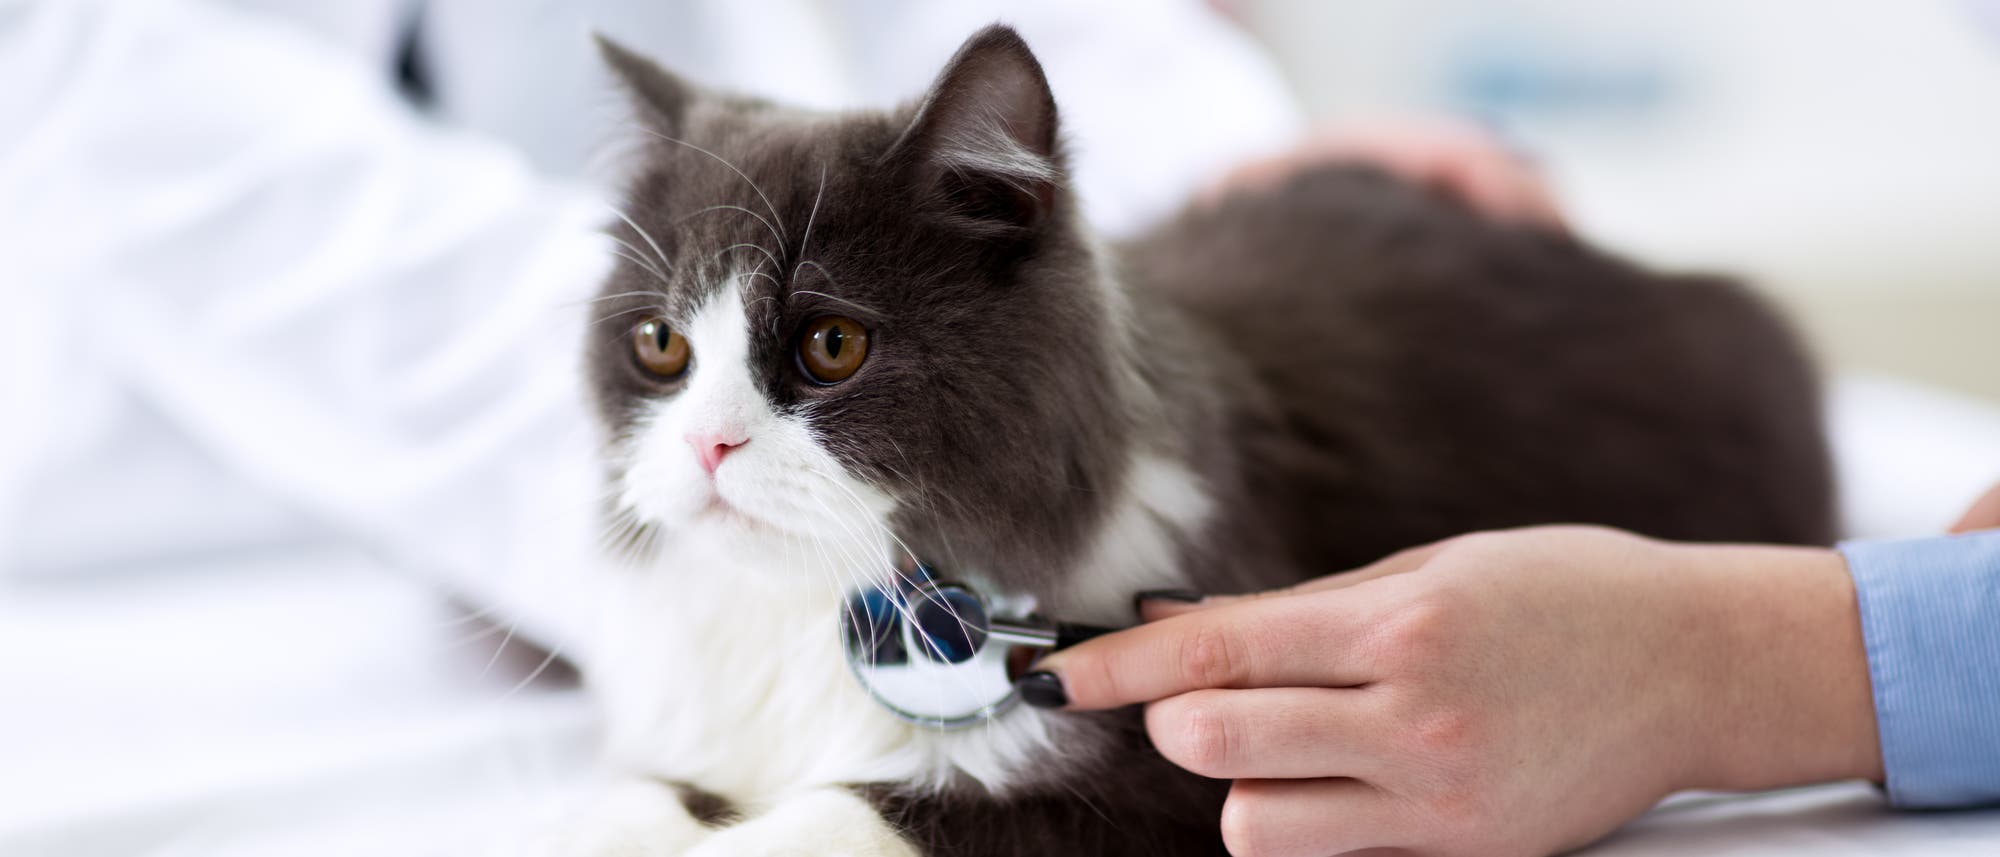 Eine junge schwarz-weiße Katze liegt auf einem Metalltisch und wird tierärztlich untersucht